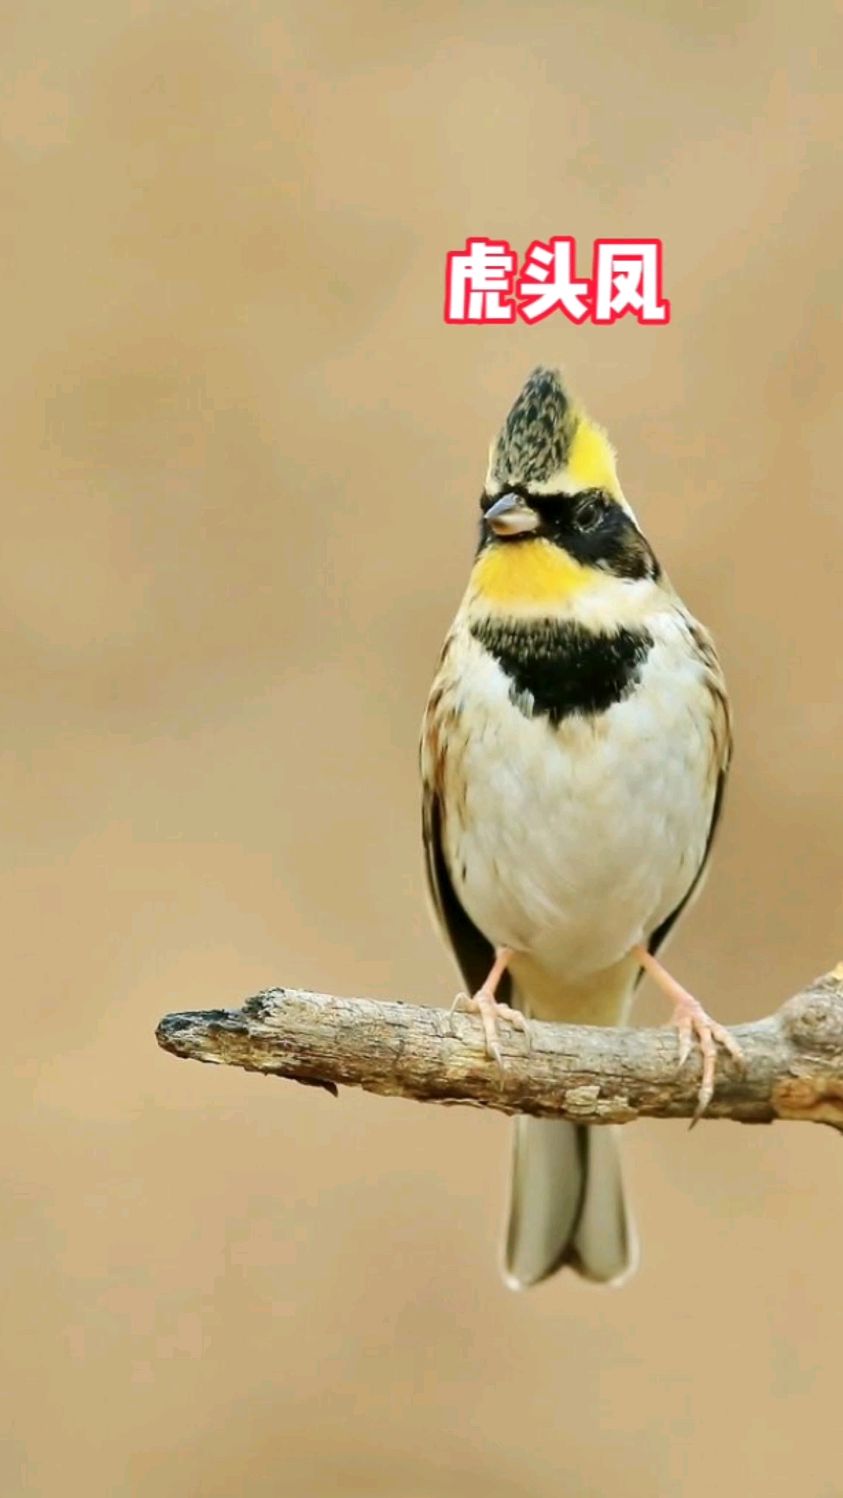 虎头凤西安最受欢迎的鸟,平时以植物种子为主要食物,在繁殖季节则以